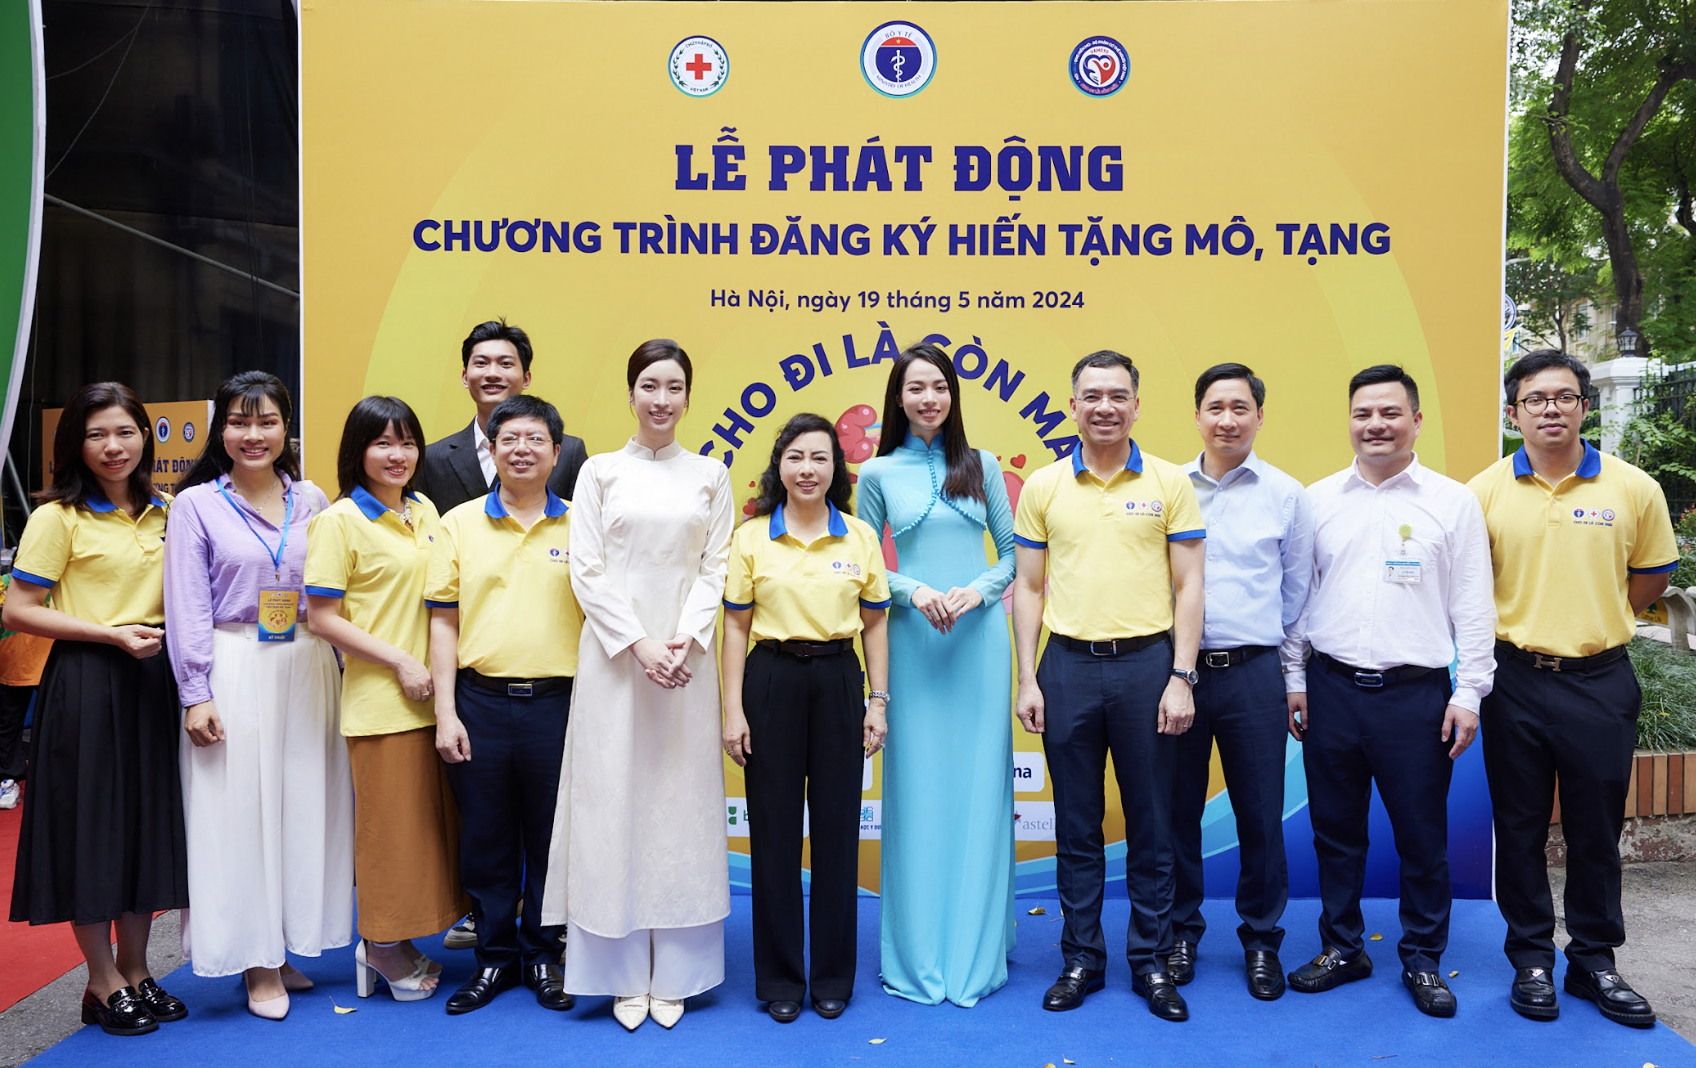 Đỗ Mỹ Linh thanh lịch xuất hiện ủng hộ Hoa hậu Huỳnh Thị Thanh Thủy đăng ký hiến tạng- Ảnh 2.